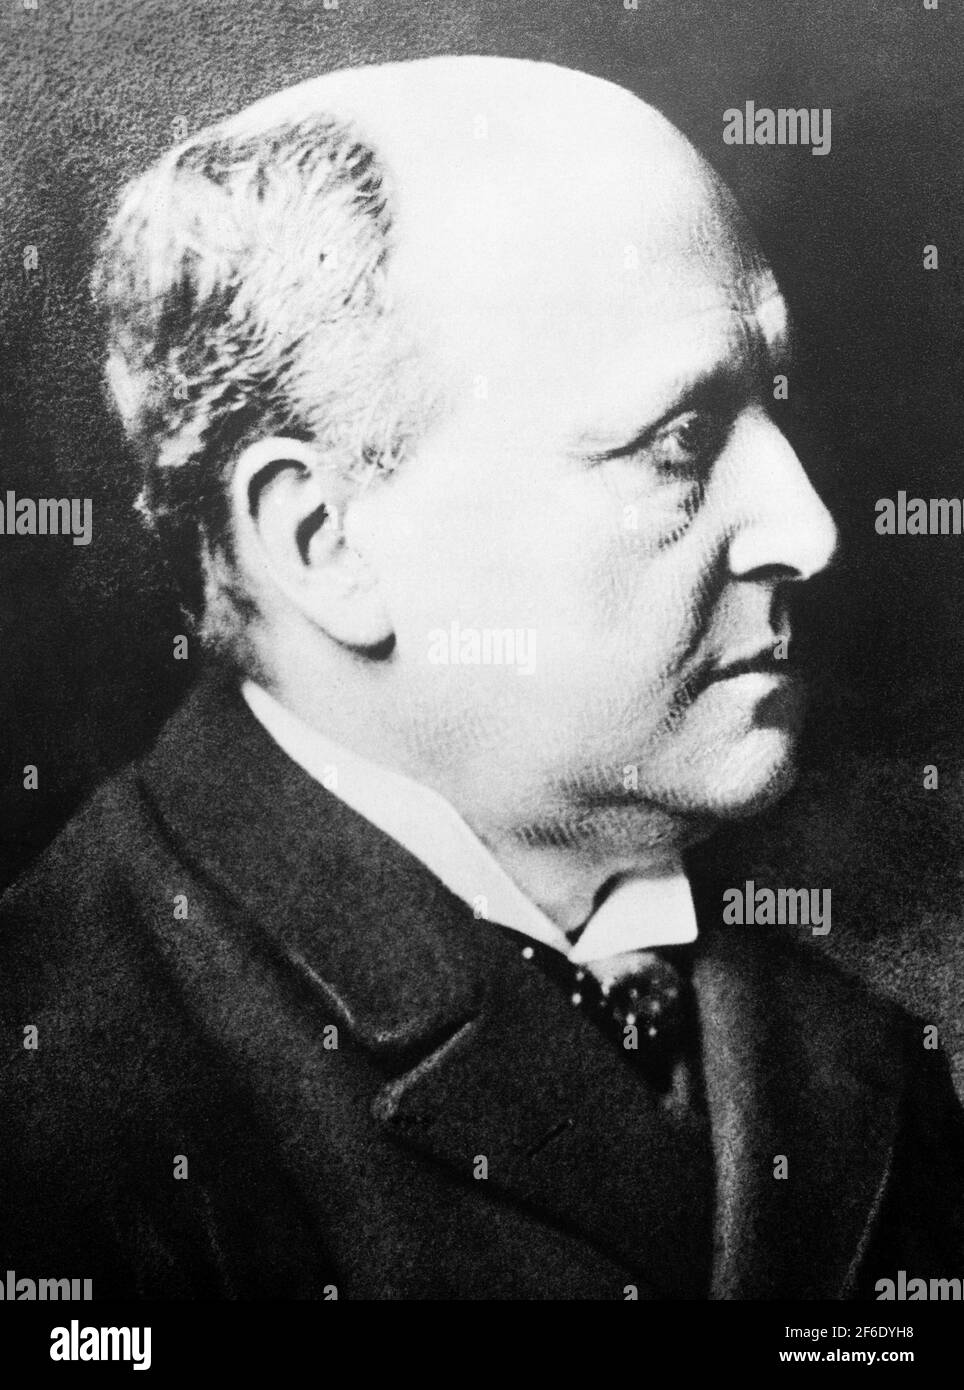 Vintage-Portraitfoto des amerikanischen Autors Henry James (1843 – 1916). Foto von Bain Nachrichtendienst um 1910. Stockfoto